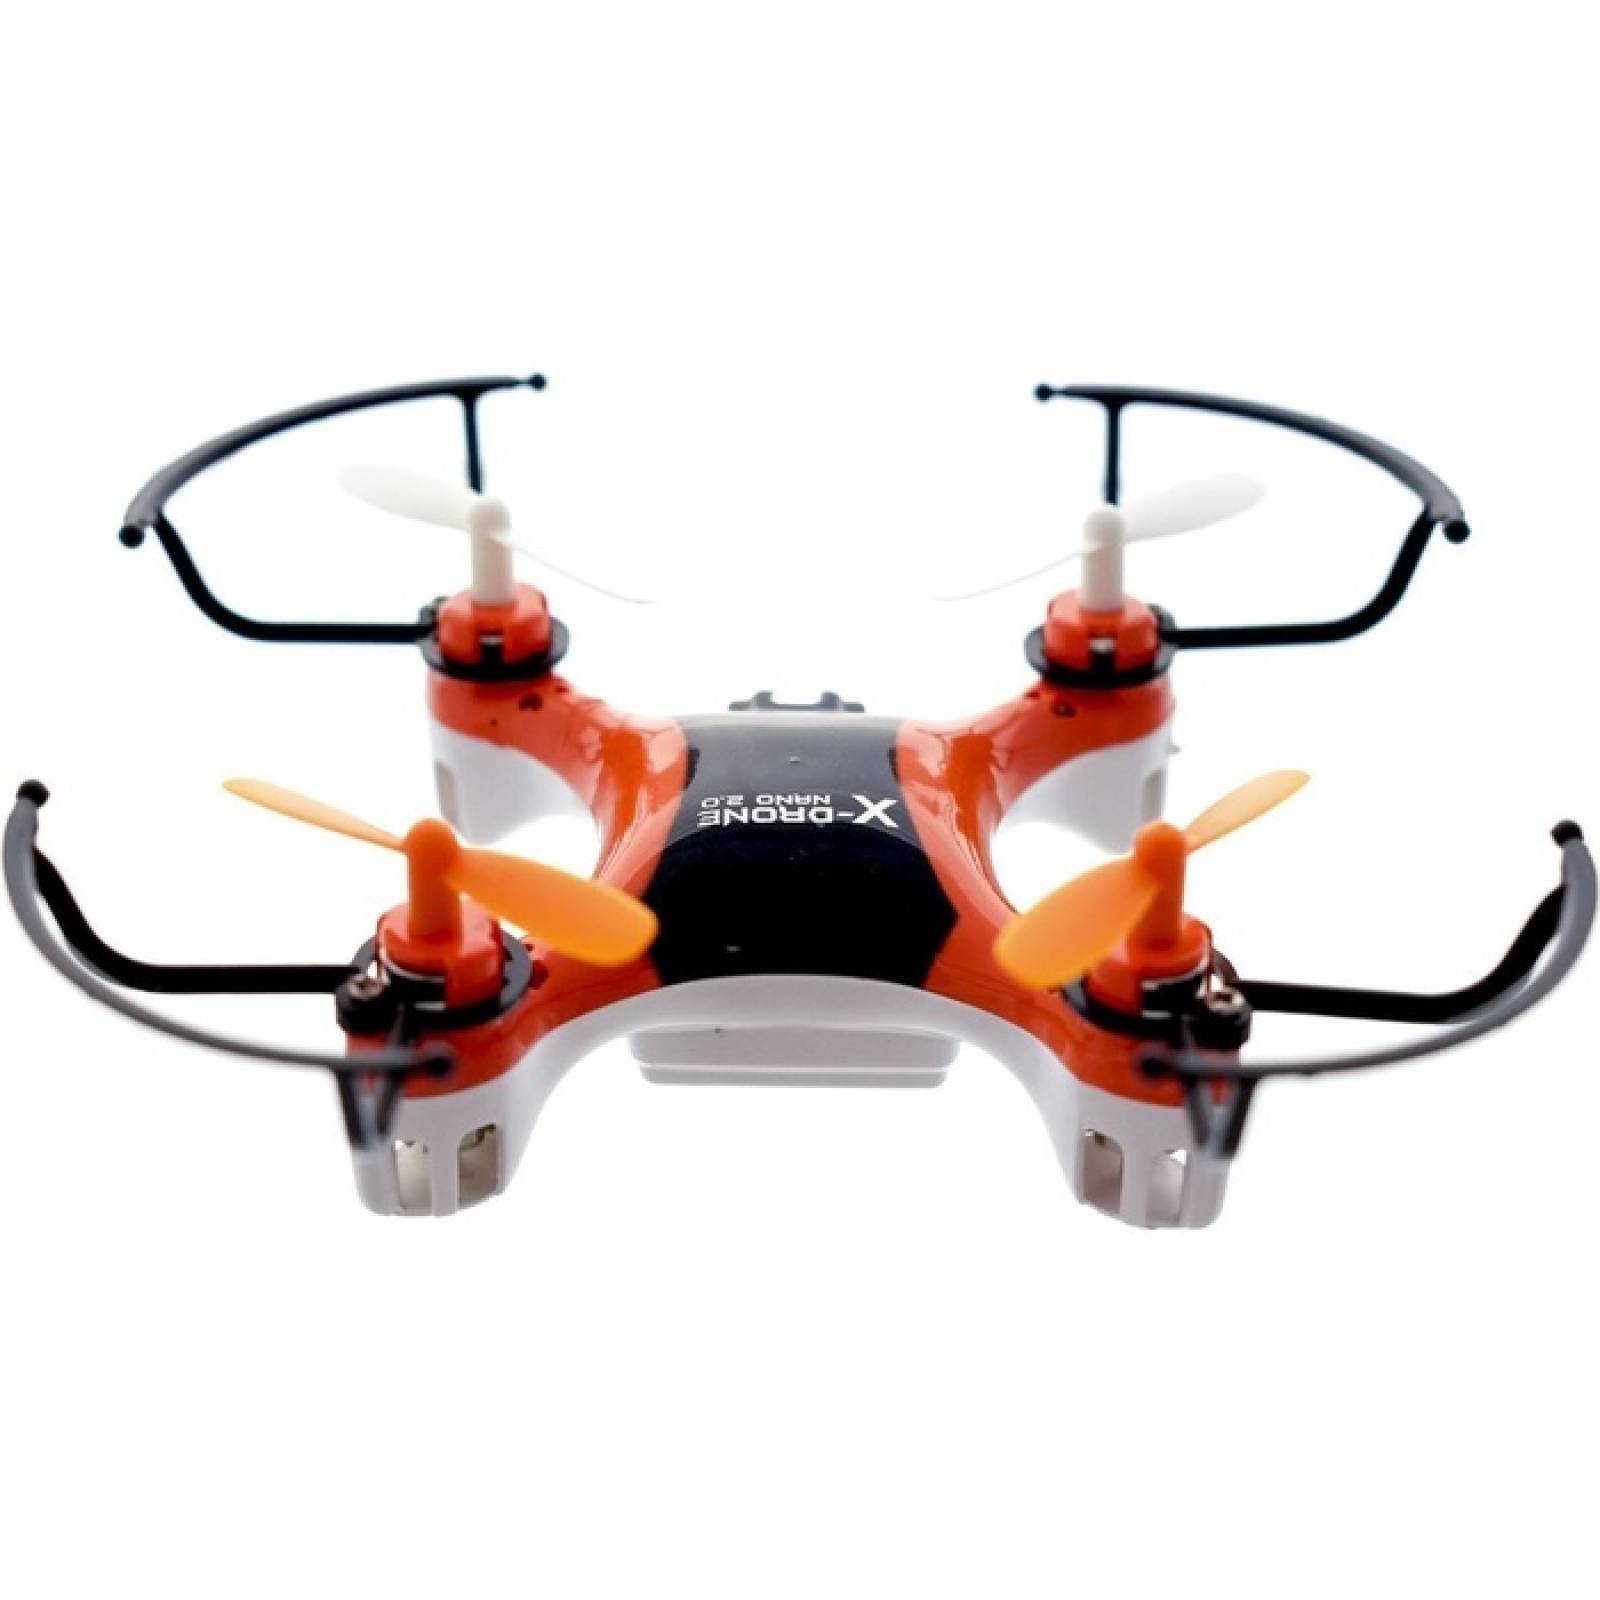 MYEPADS XDrone Nano 20 Toy Drone